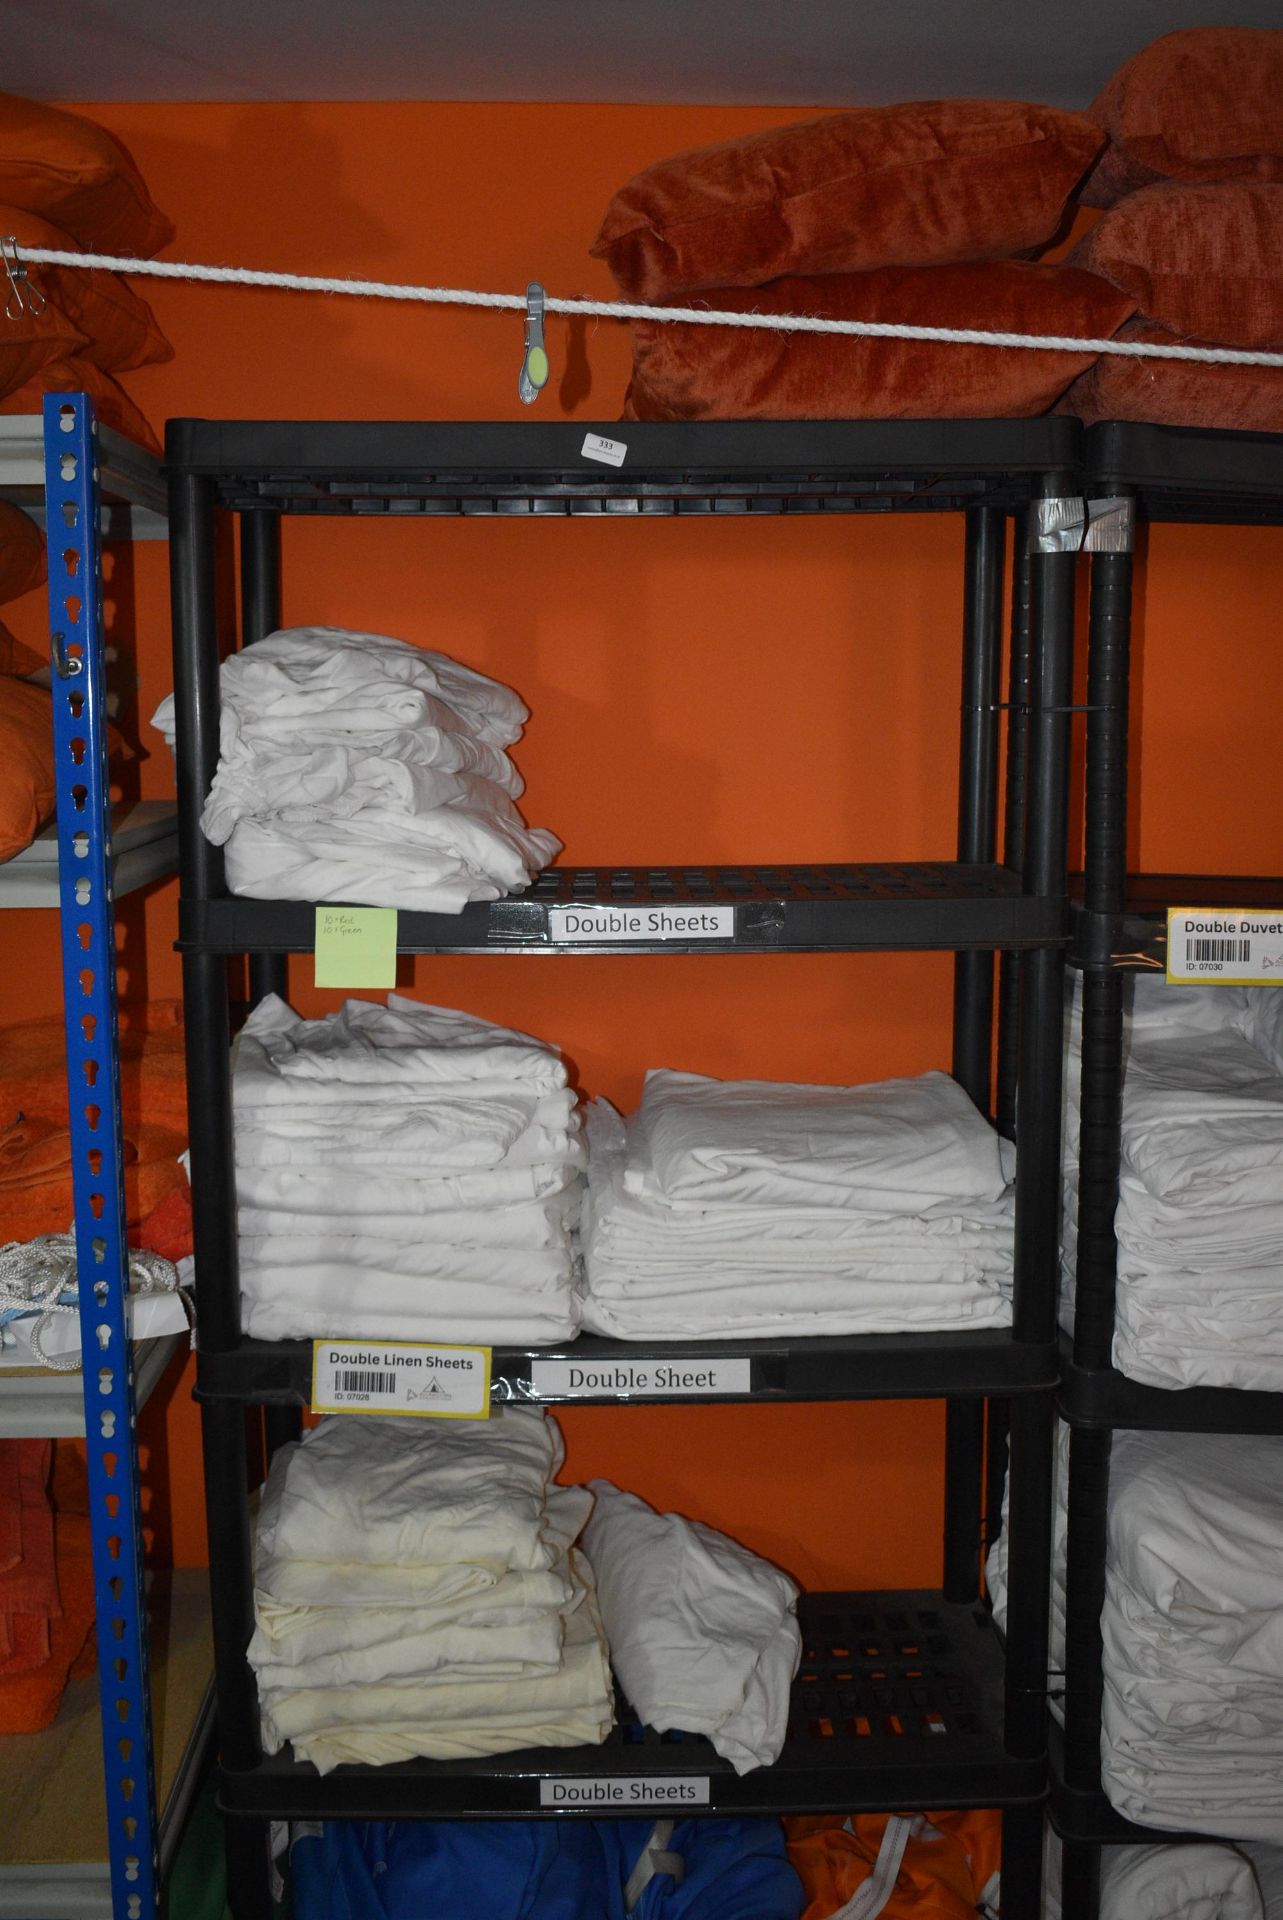 *Five Tier Plastic Shelf Unit Containing Linen Double Sheets